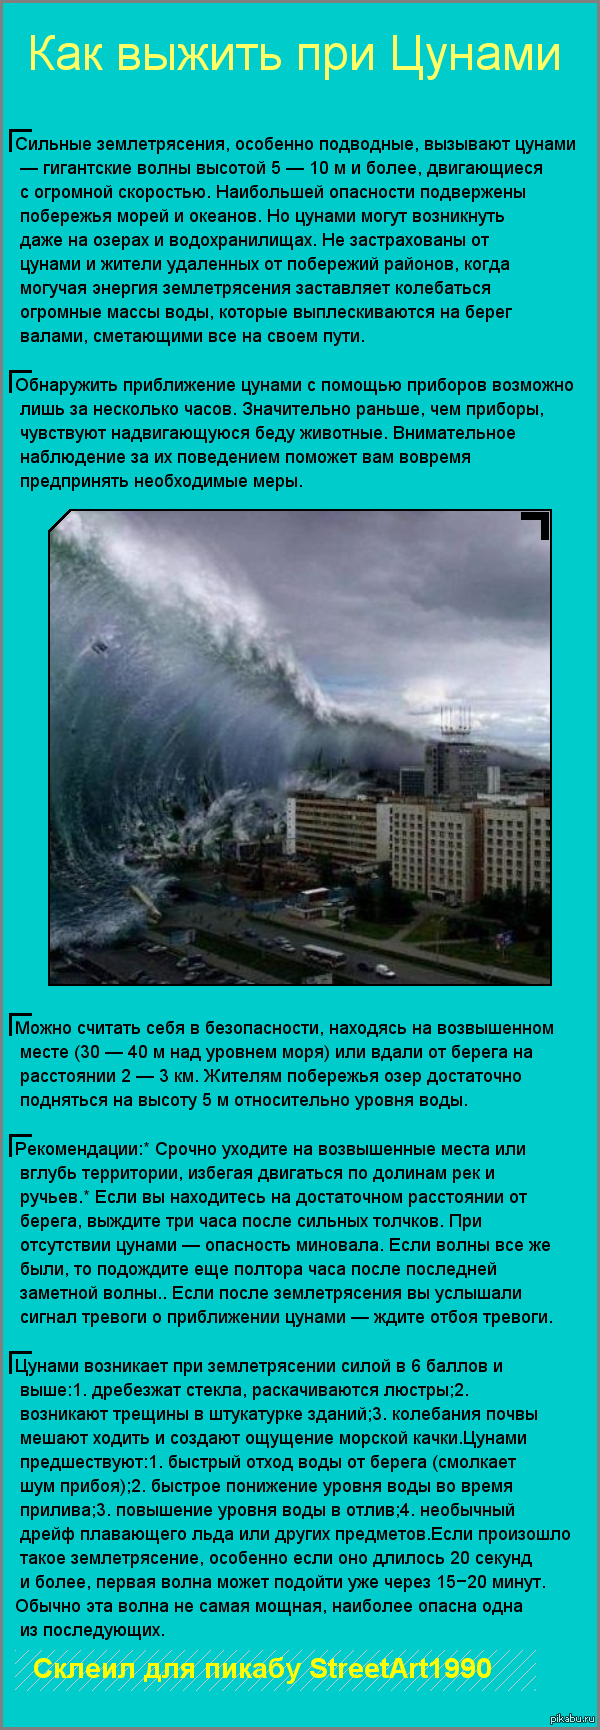 Действия при угрозе и возникновении цунами